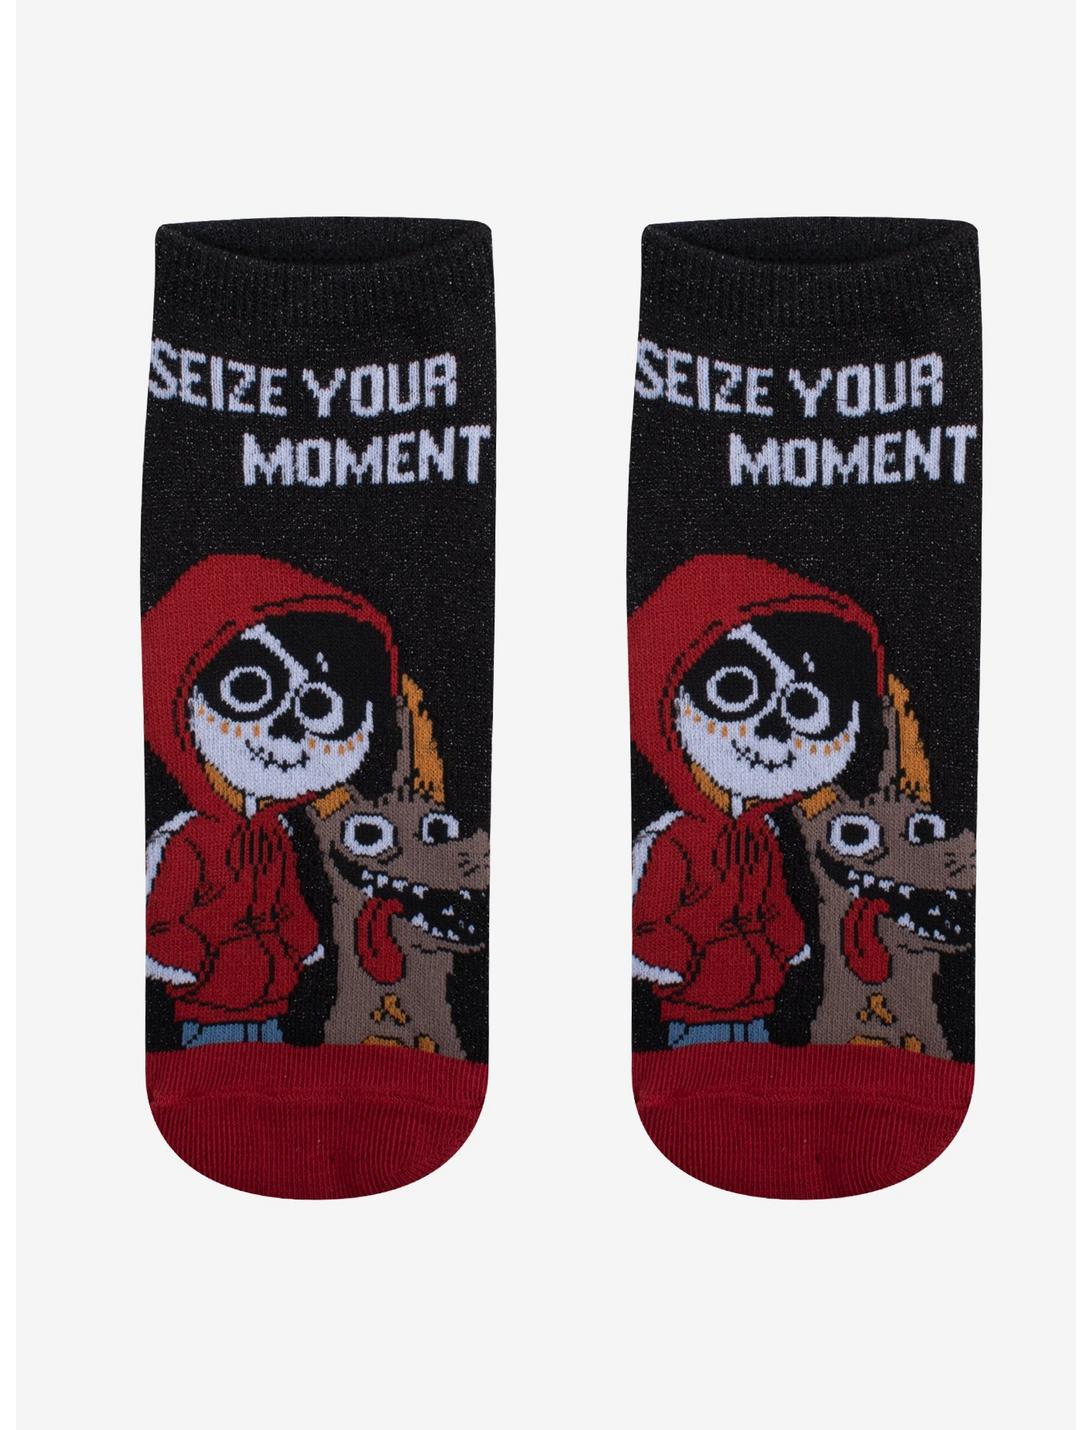 Disney Pixar Coco Seize Your Moment No-Show Socks, , hi-res